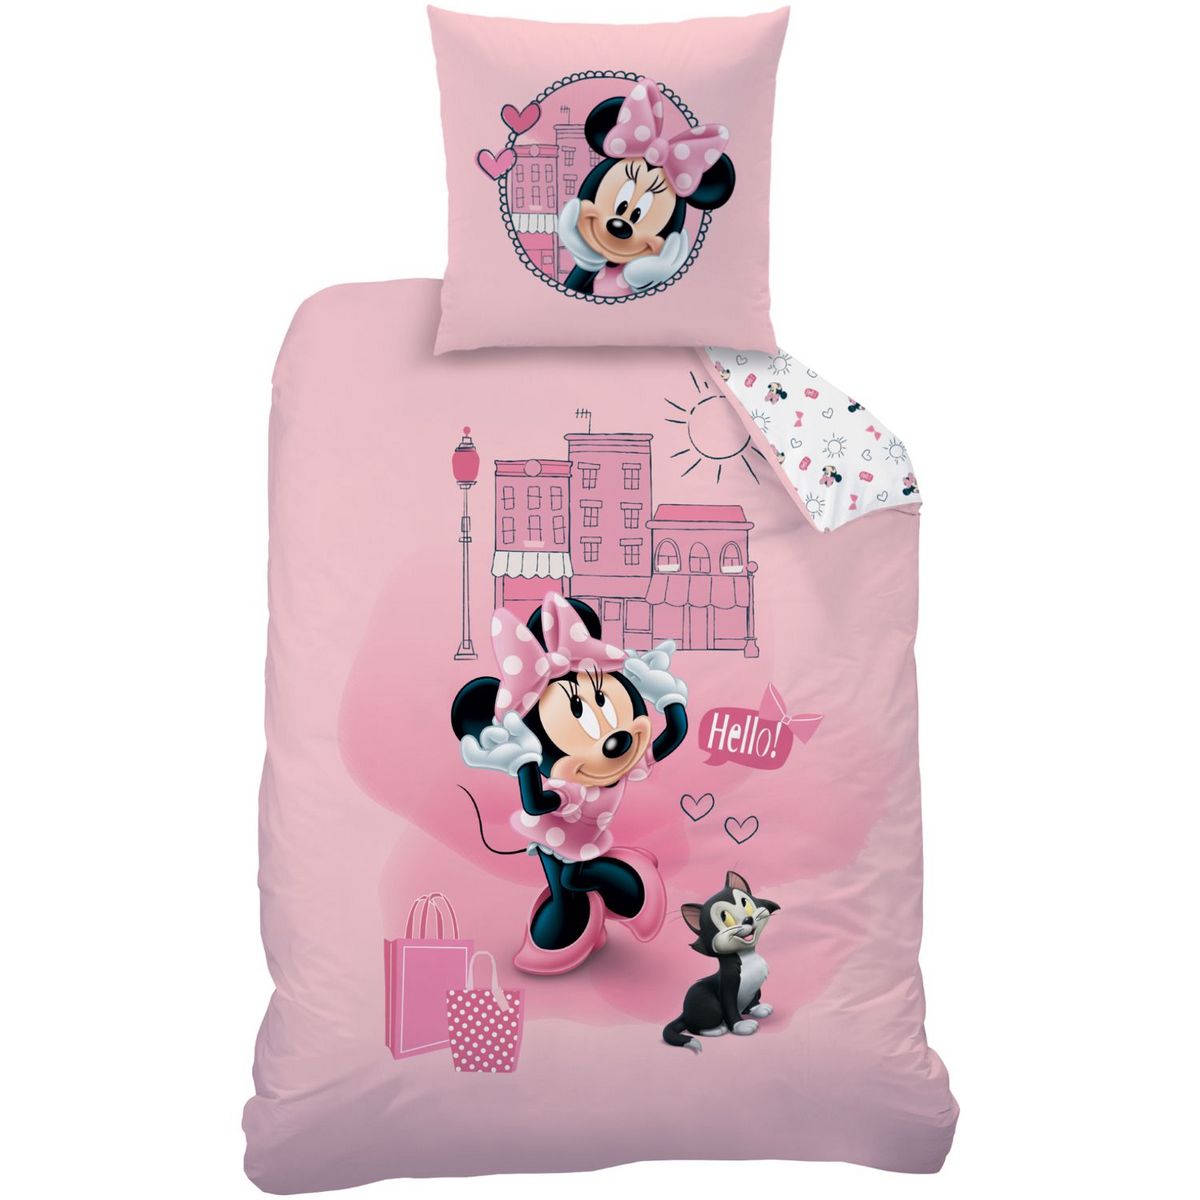 Housse de couette Minnie Disney En Rose - New discount.com